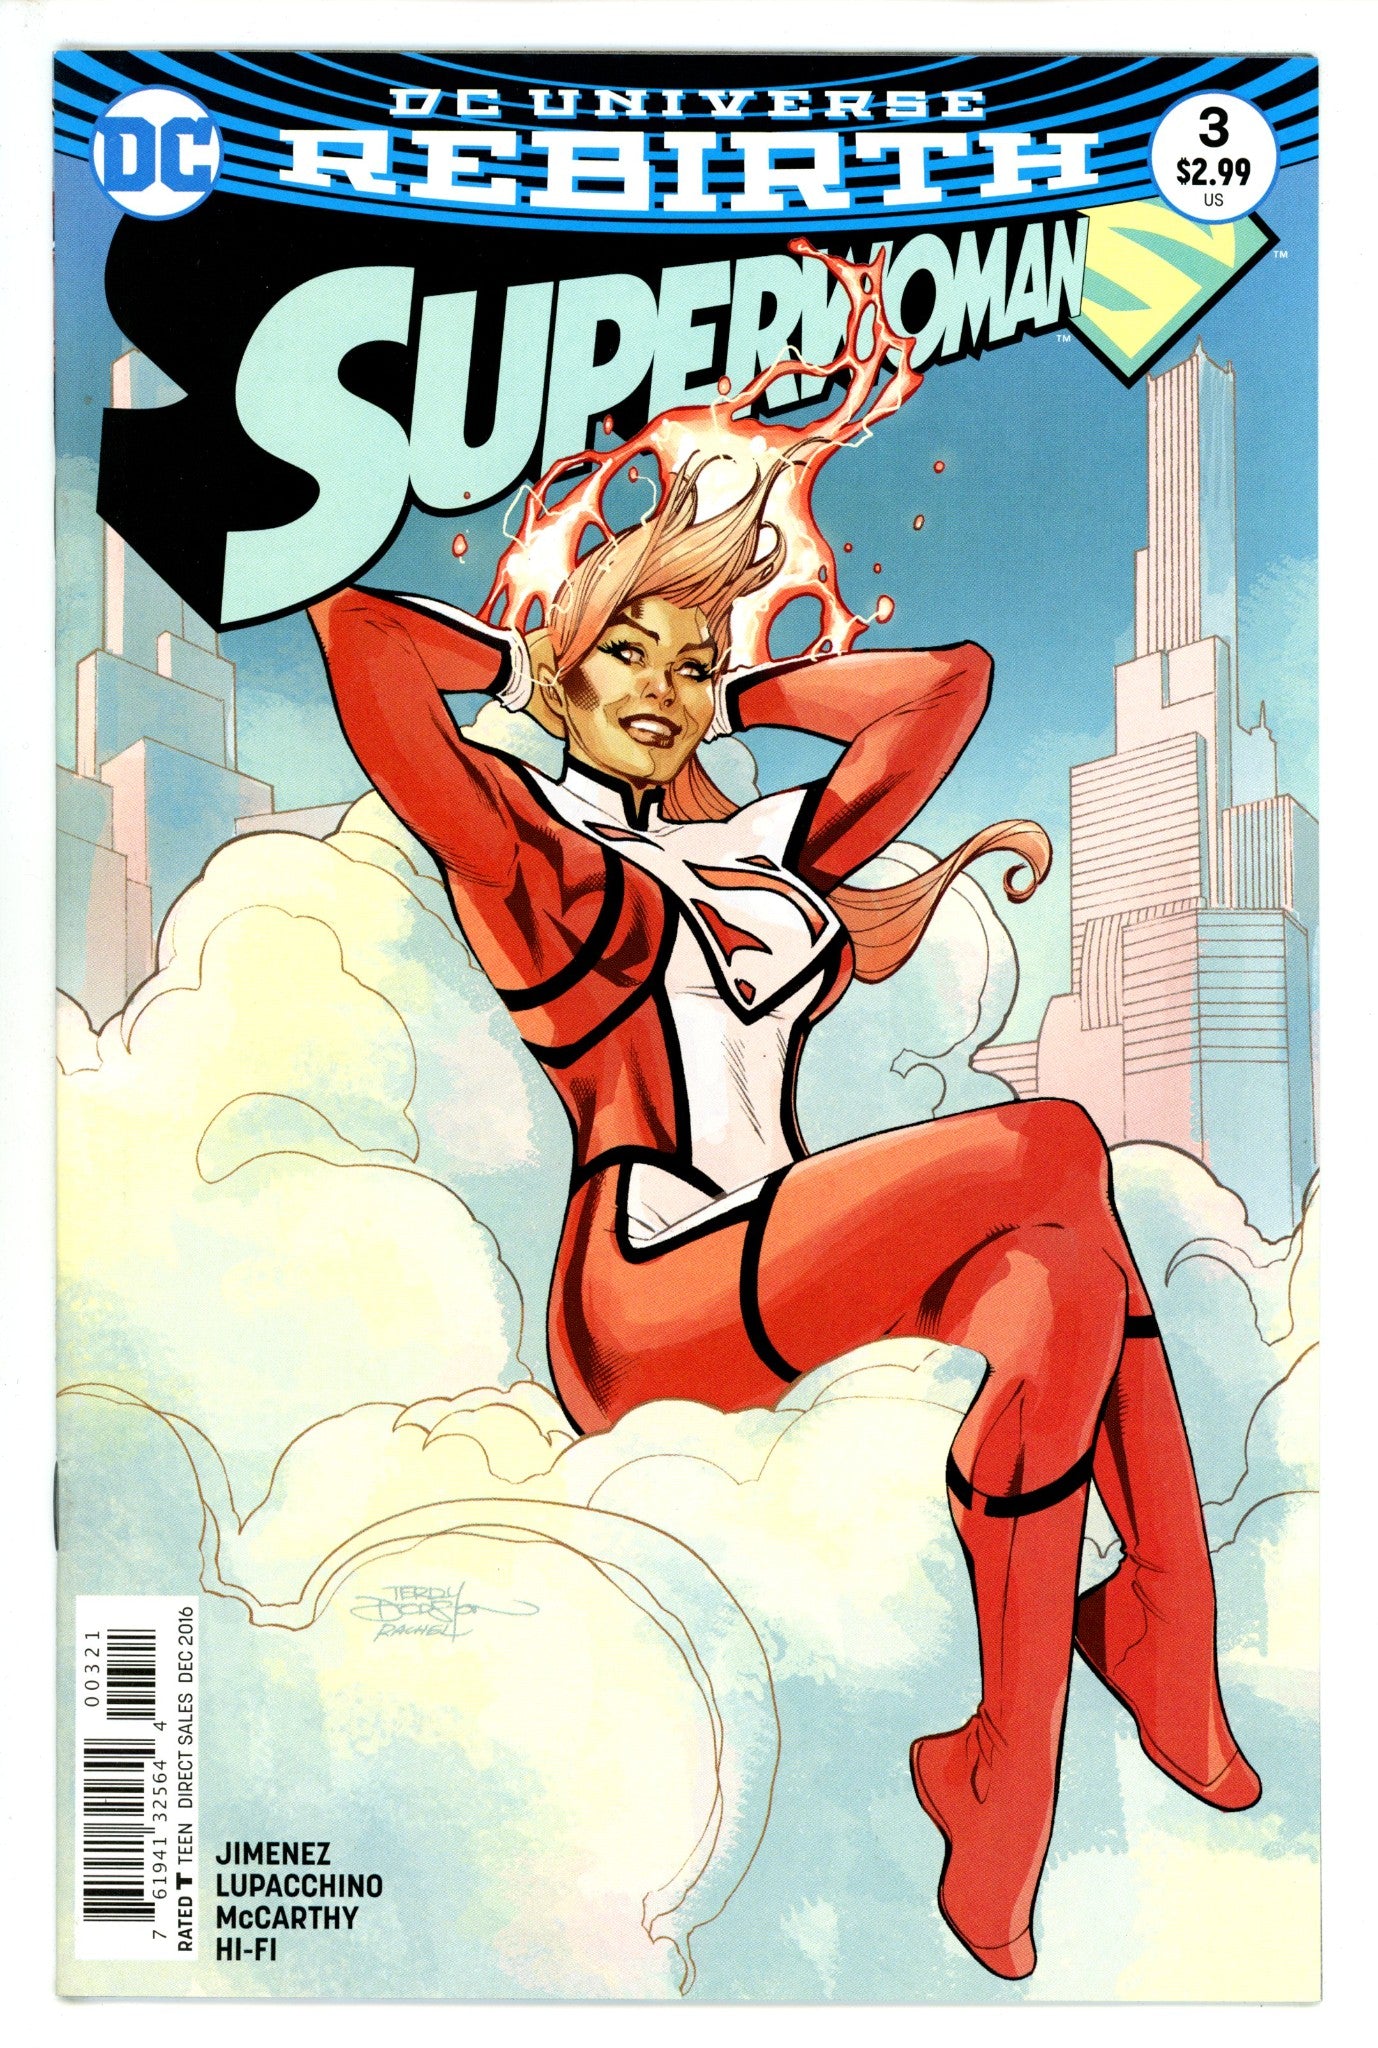 Superwoman Vol 1 3 (2016)